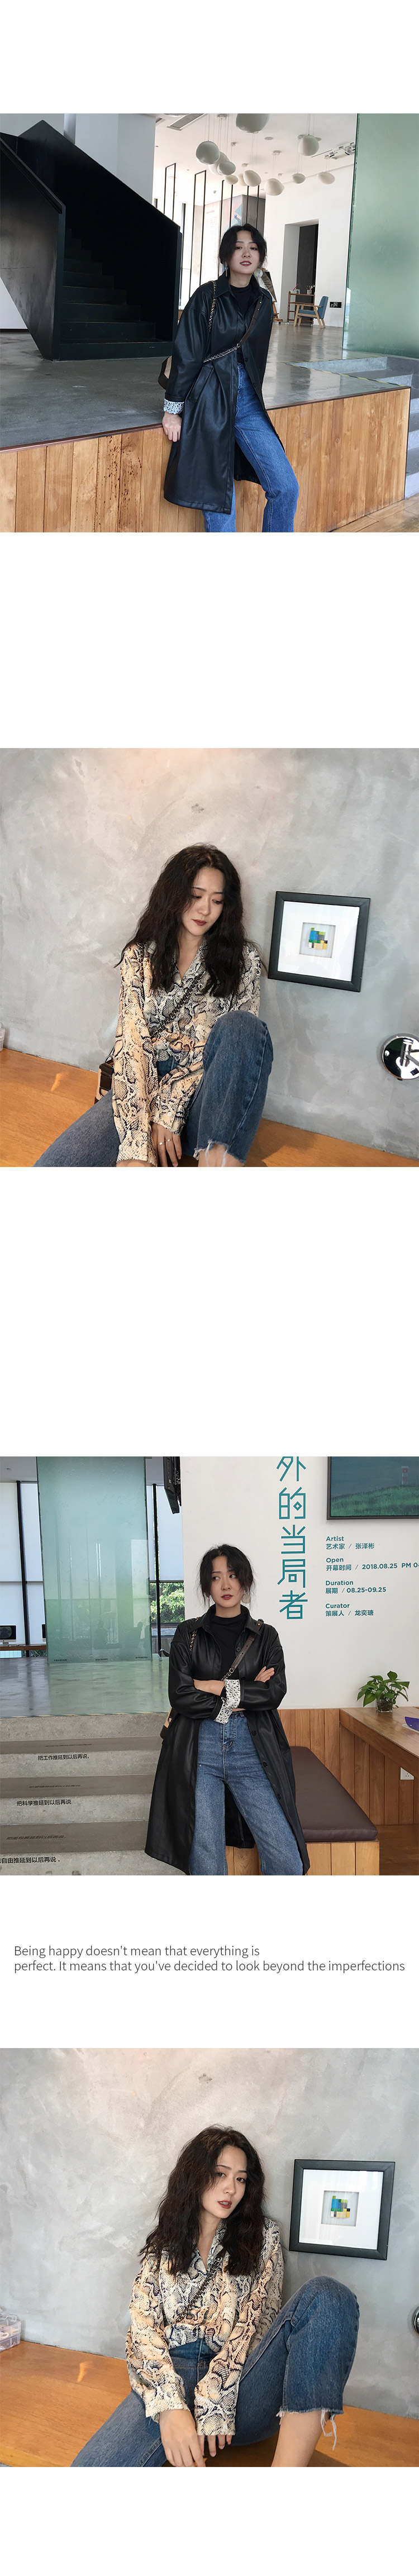 直筒牛仔裤女春秋新款韩版显瘦高腰九分裤网红女秋-8.jpg